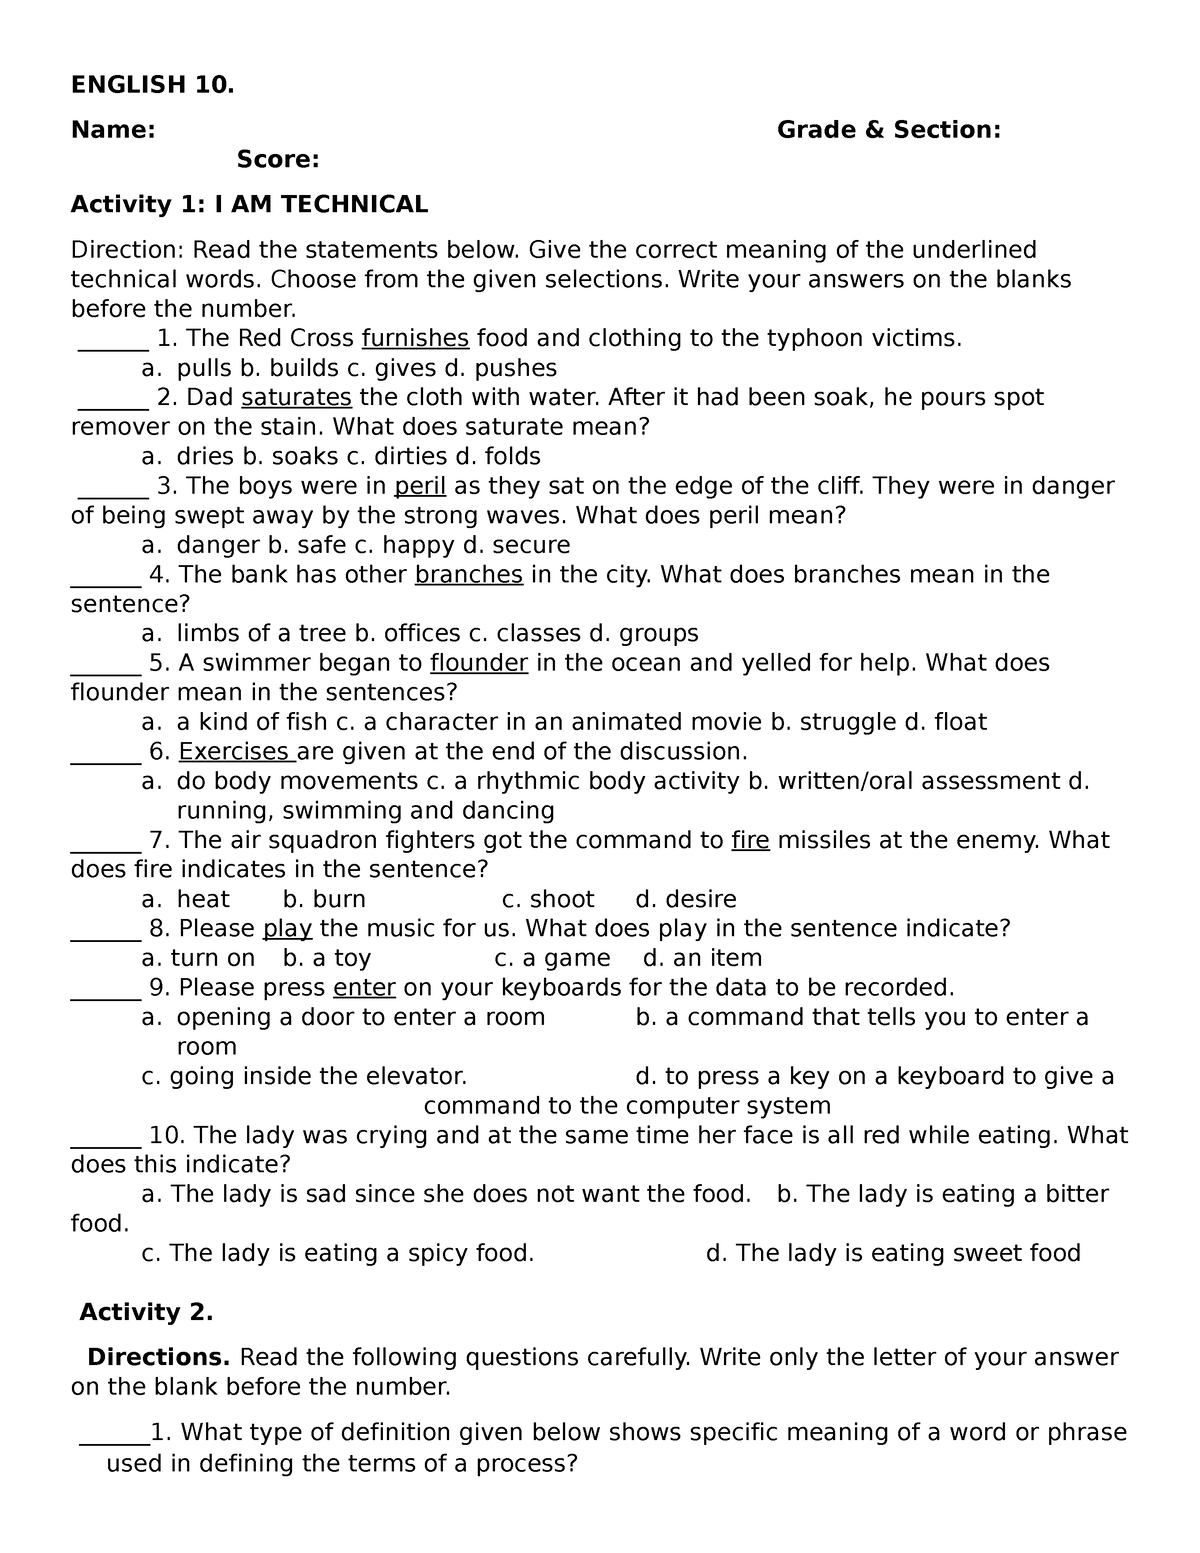 activity-sheet-for-grade-10-english-10-name-grade-section-score